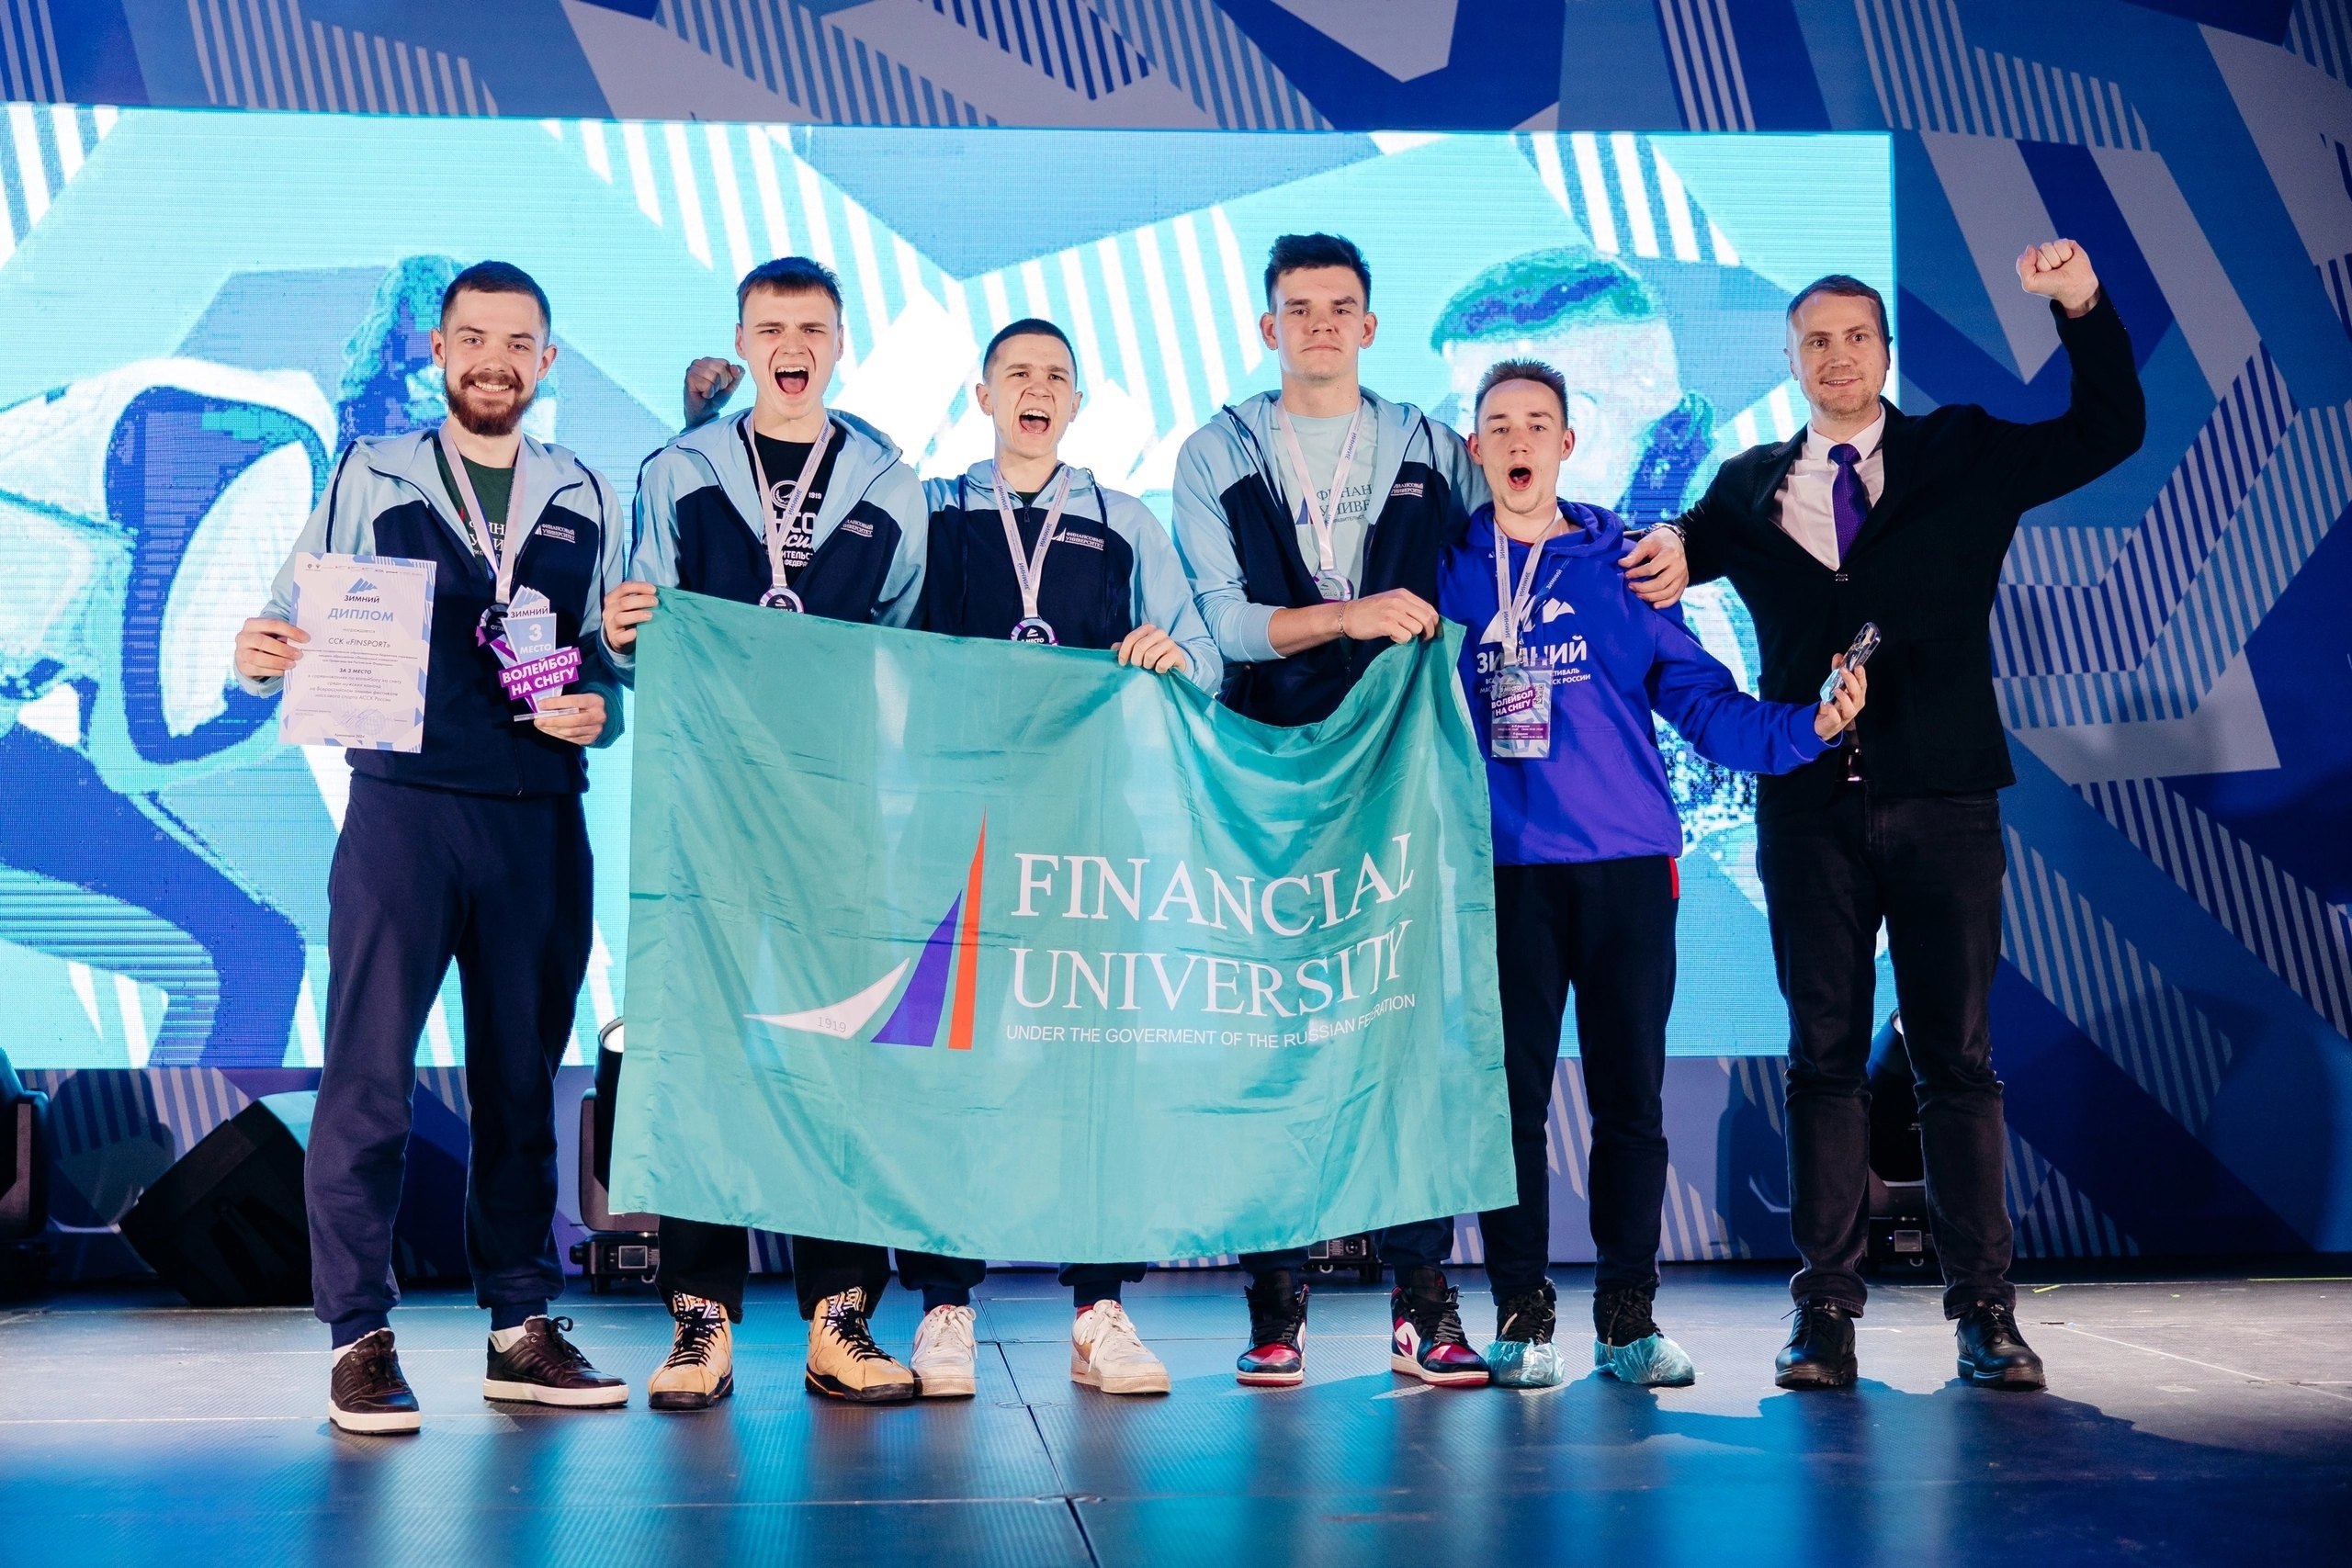 Студенты Финансового университета призеры всероссийских соревнований по волейболу на снегу!